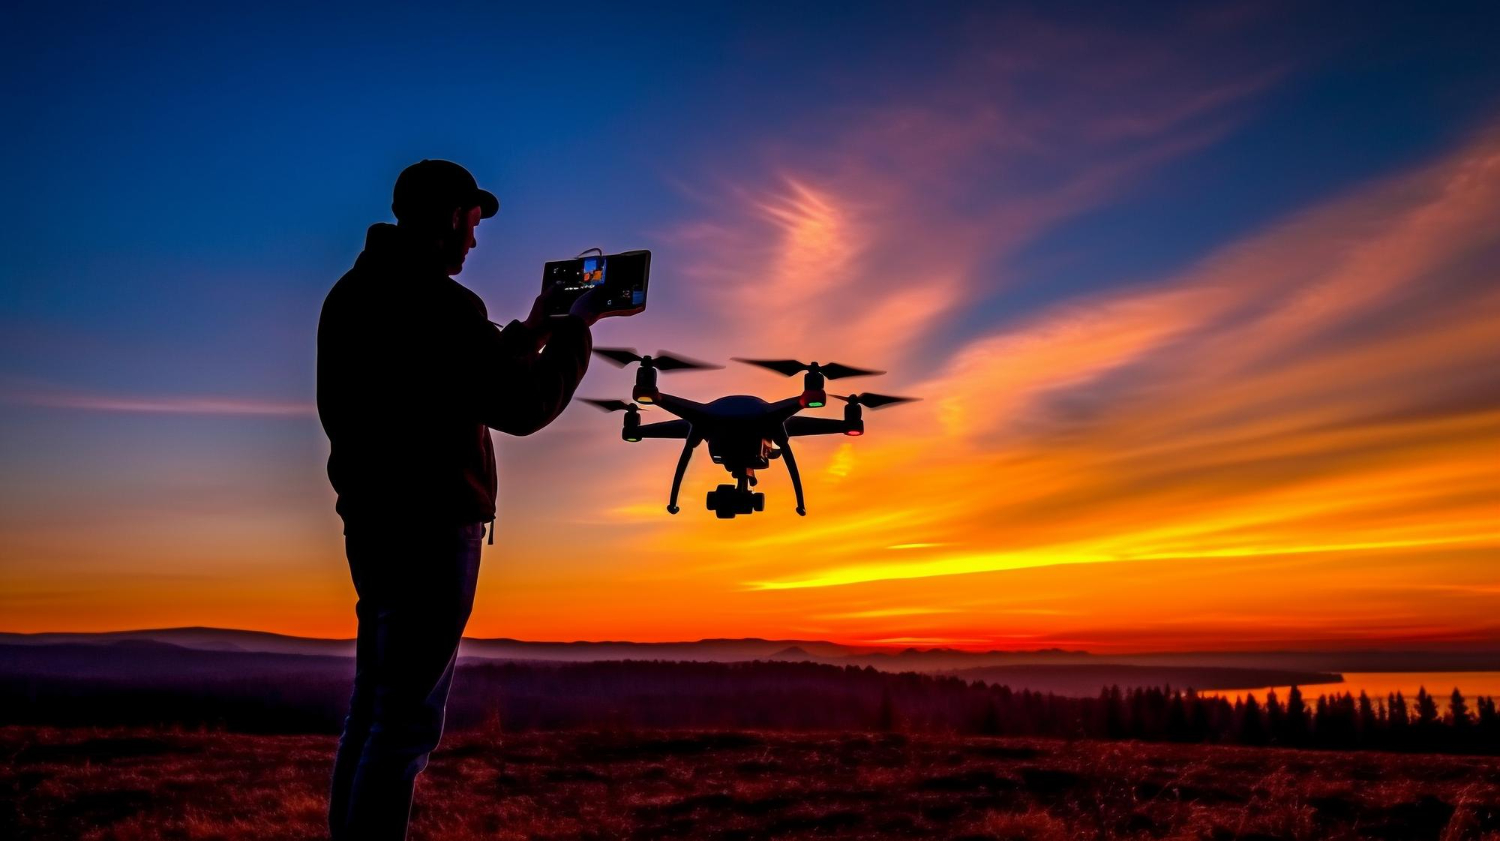 fotogrametría con drones